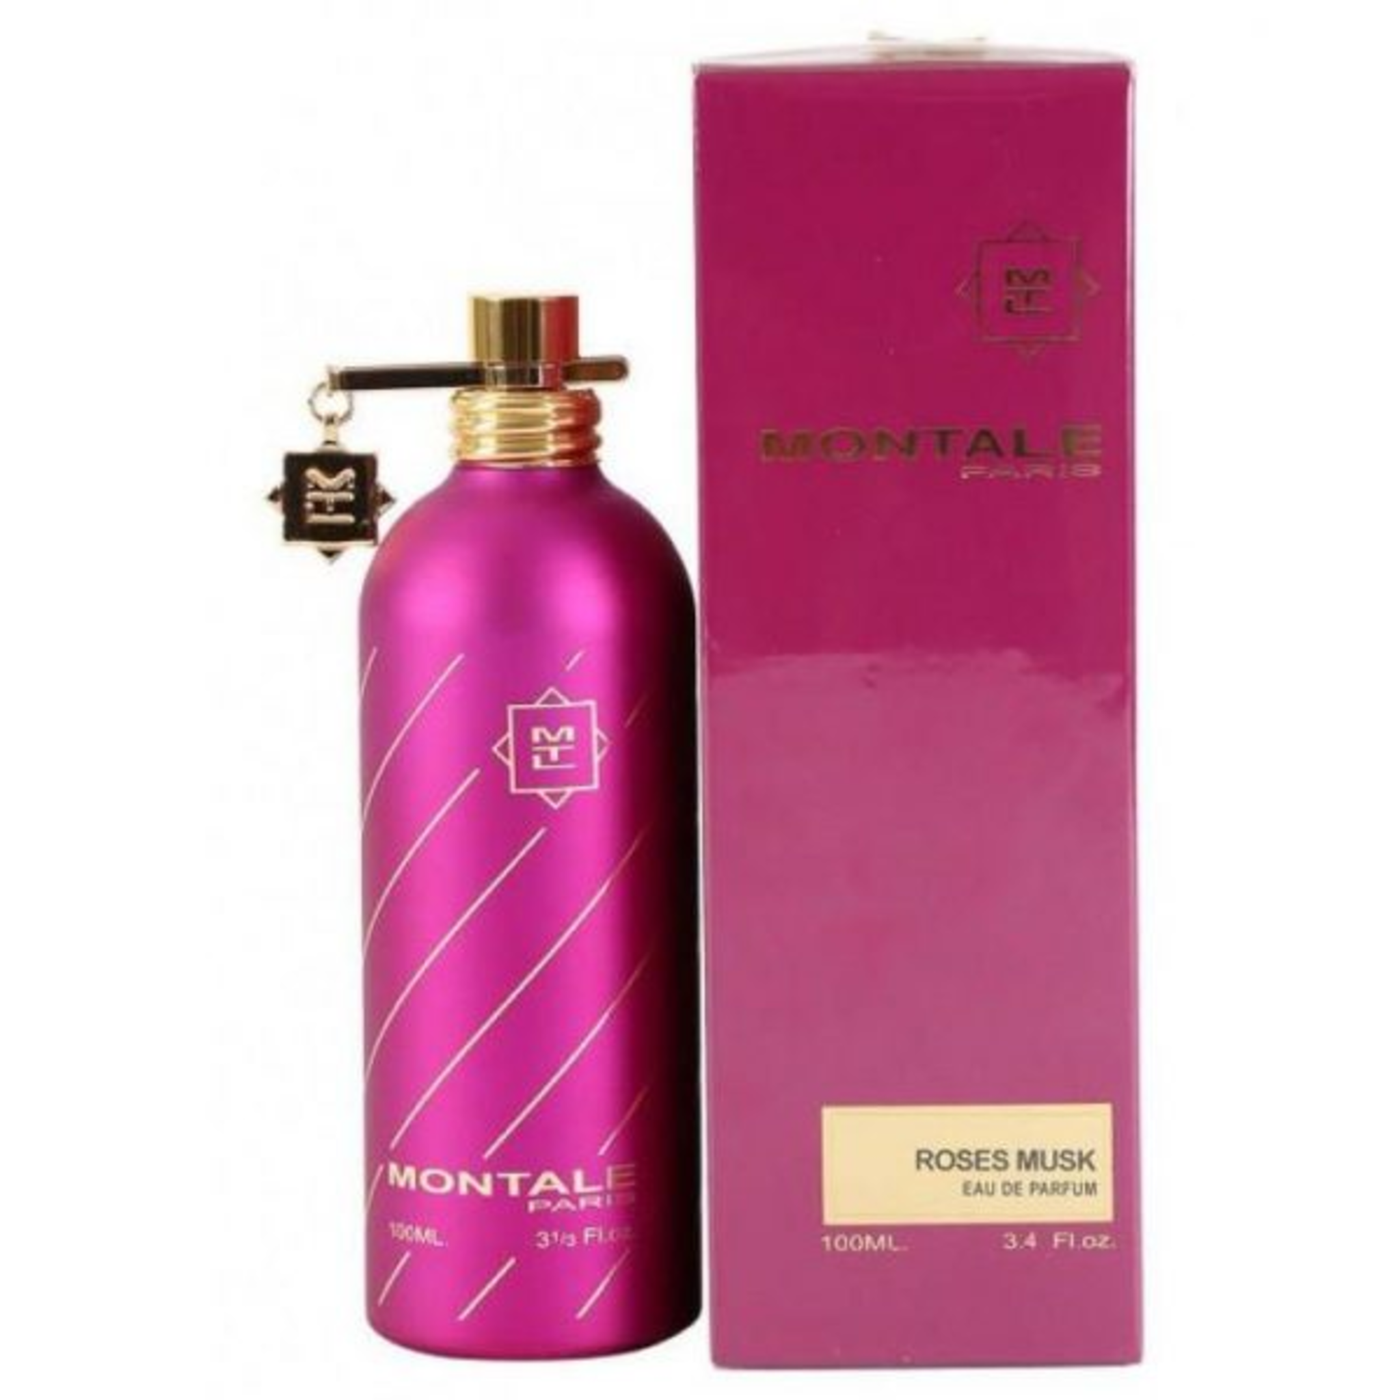 Montale Roses Musk For Women Eau De Parfum 100Ml (Pink Box)